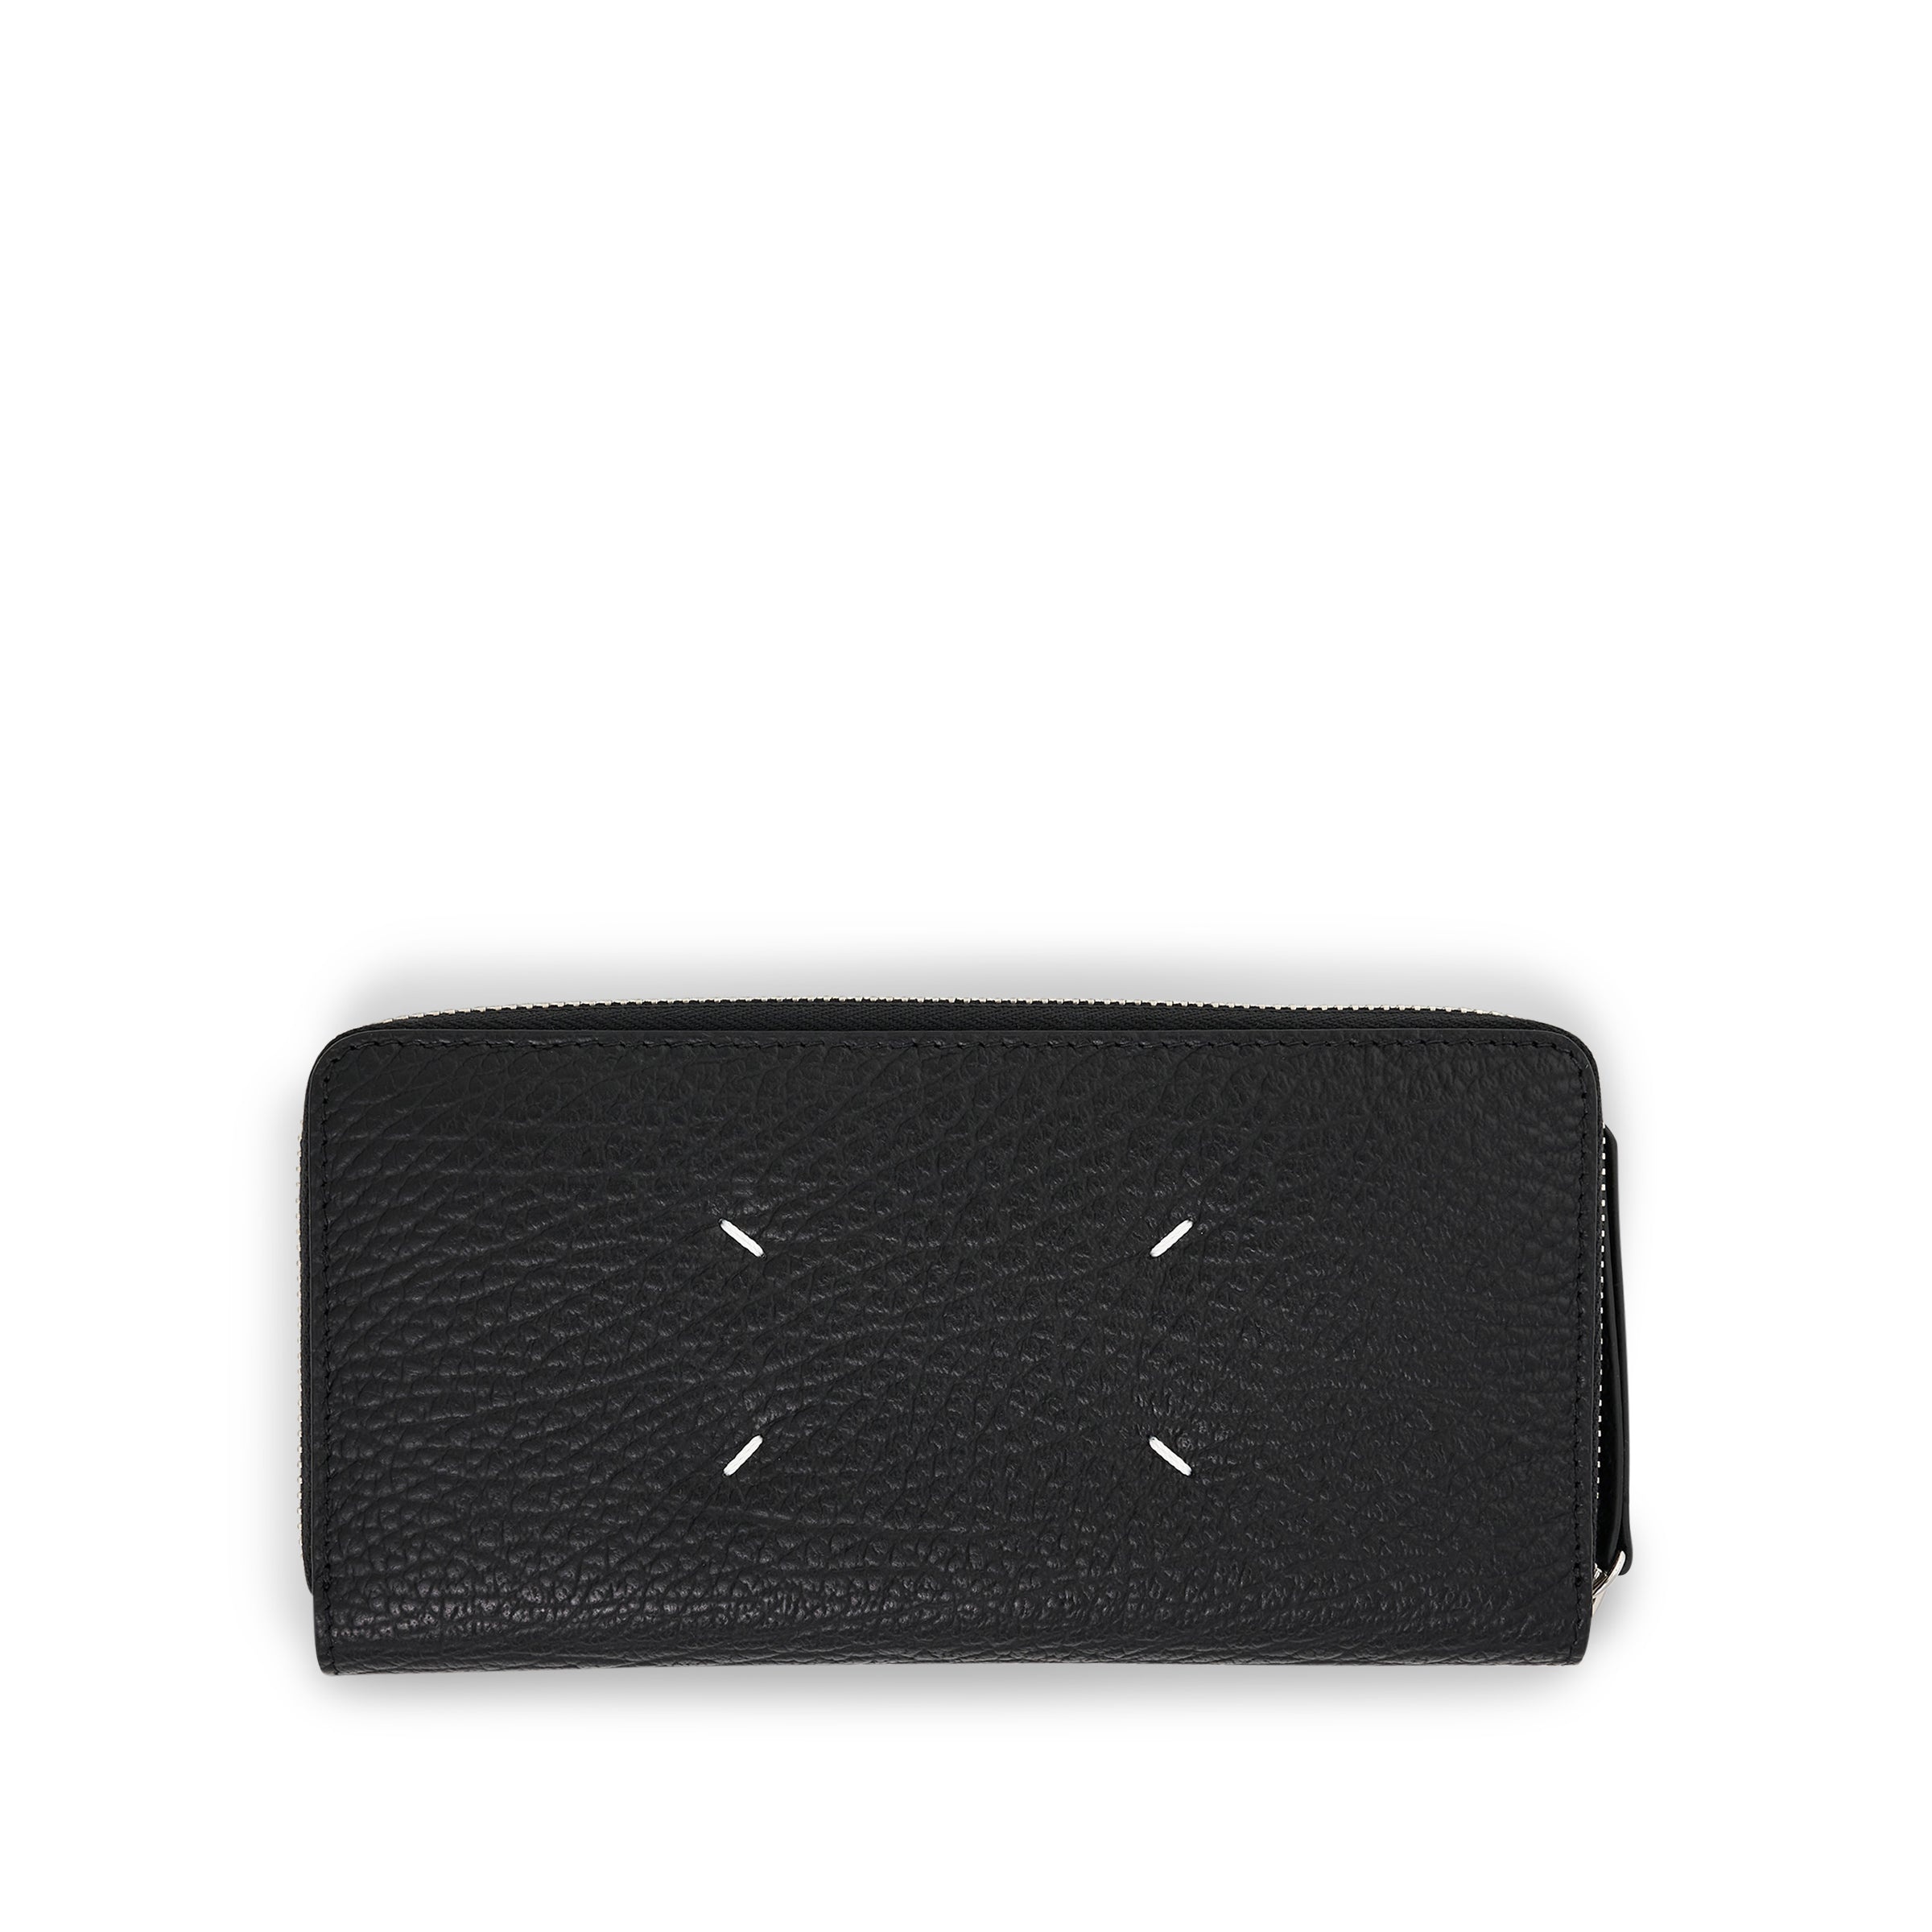 Four Stitches Zip Around Wallet in Black - 1